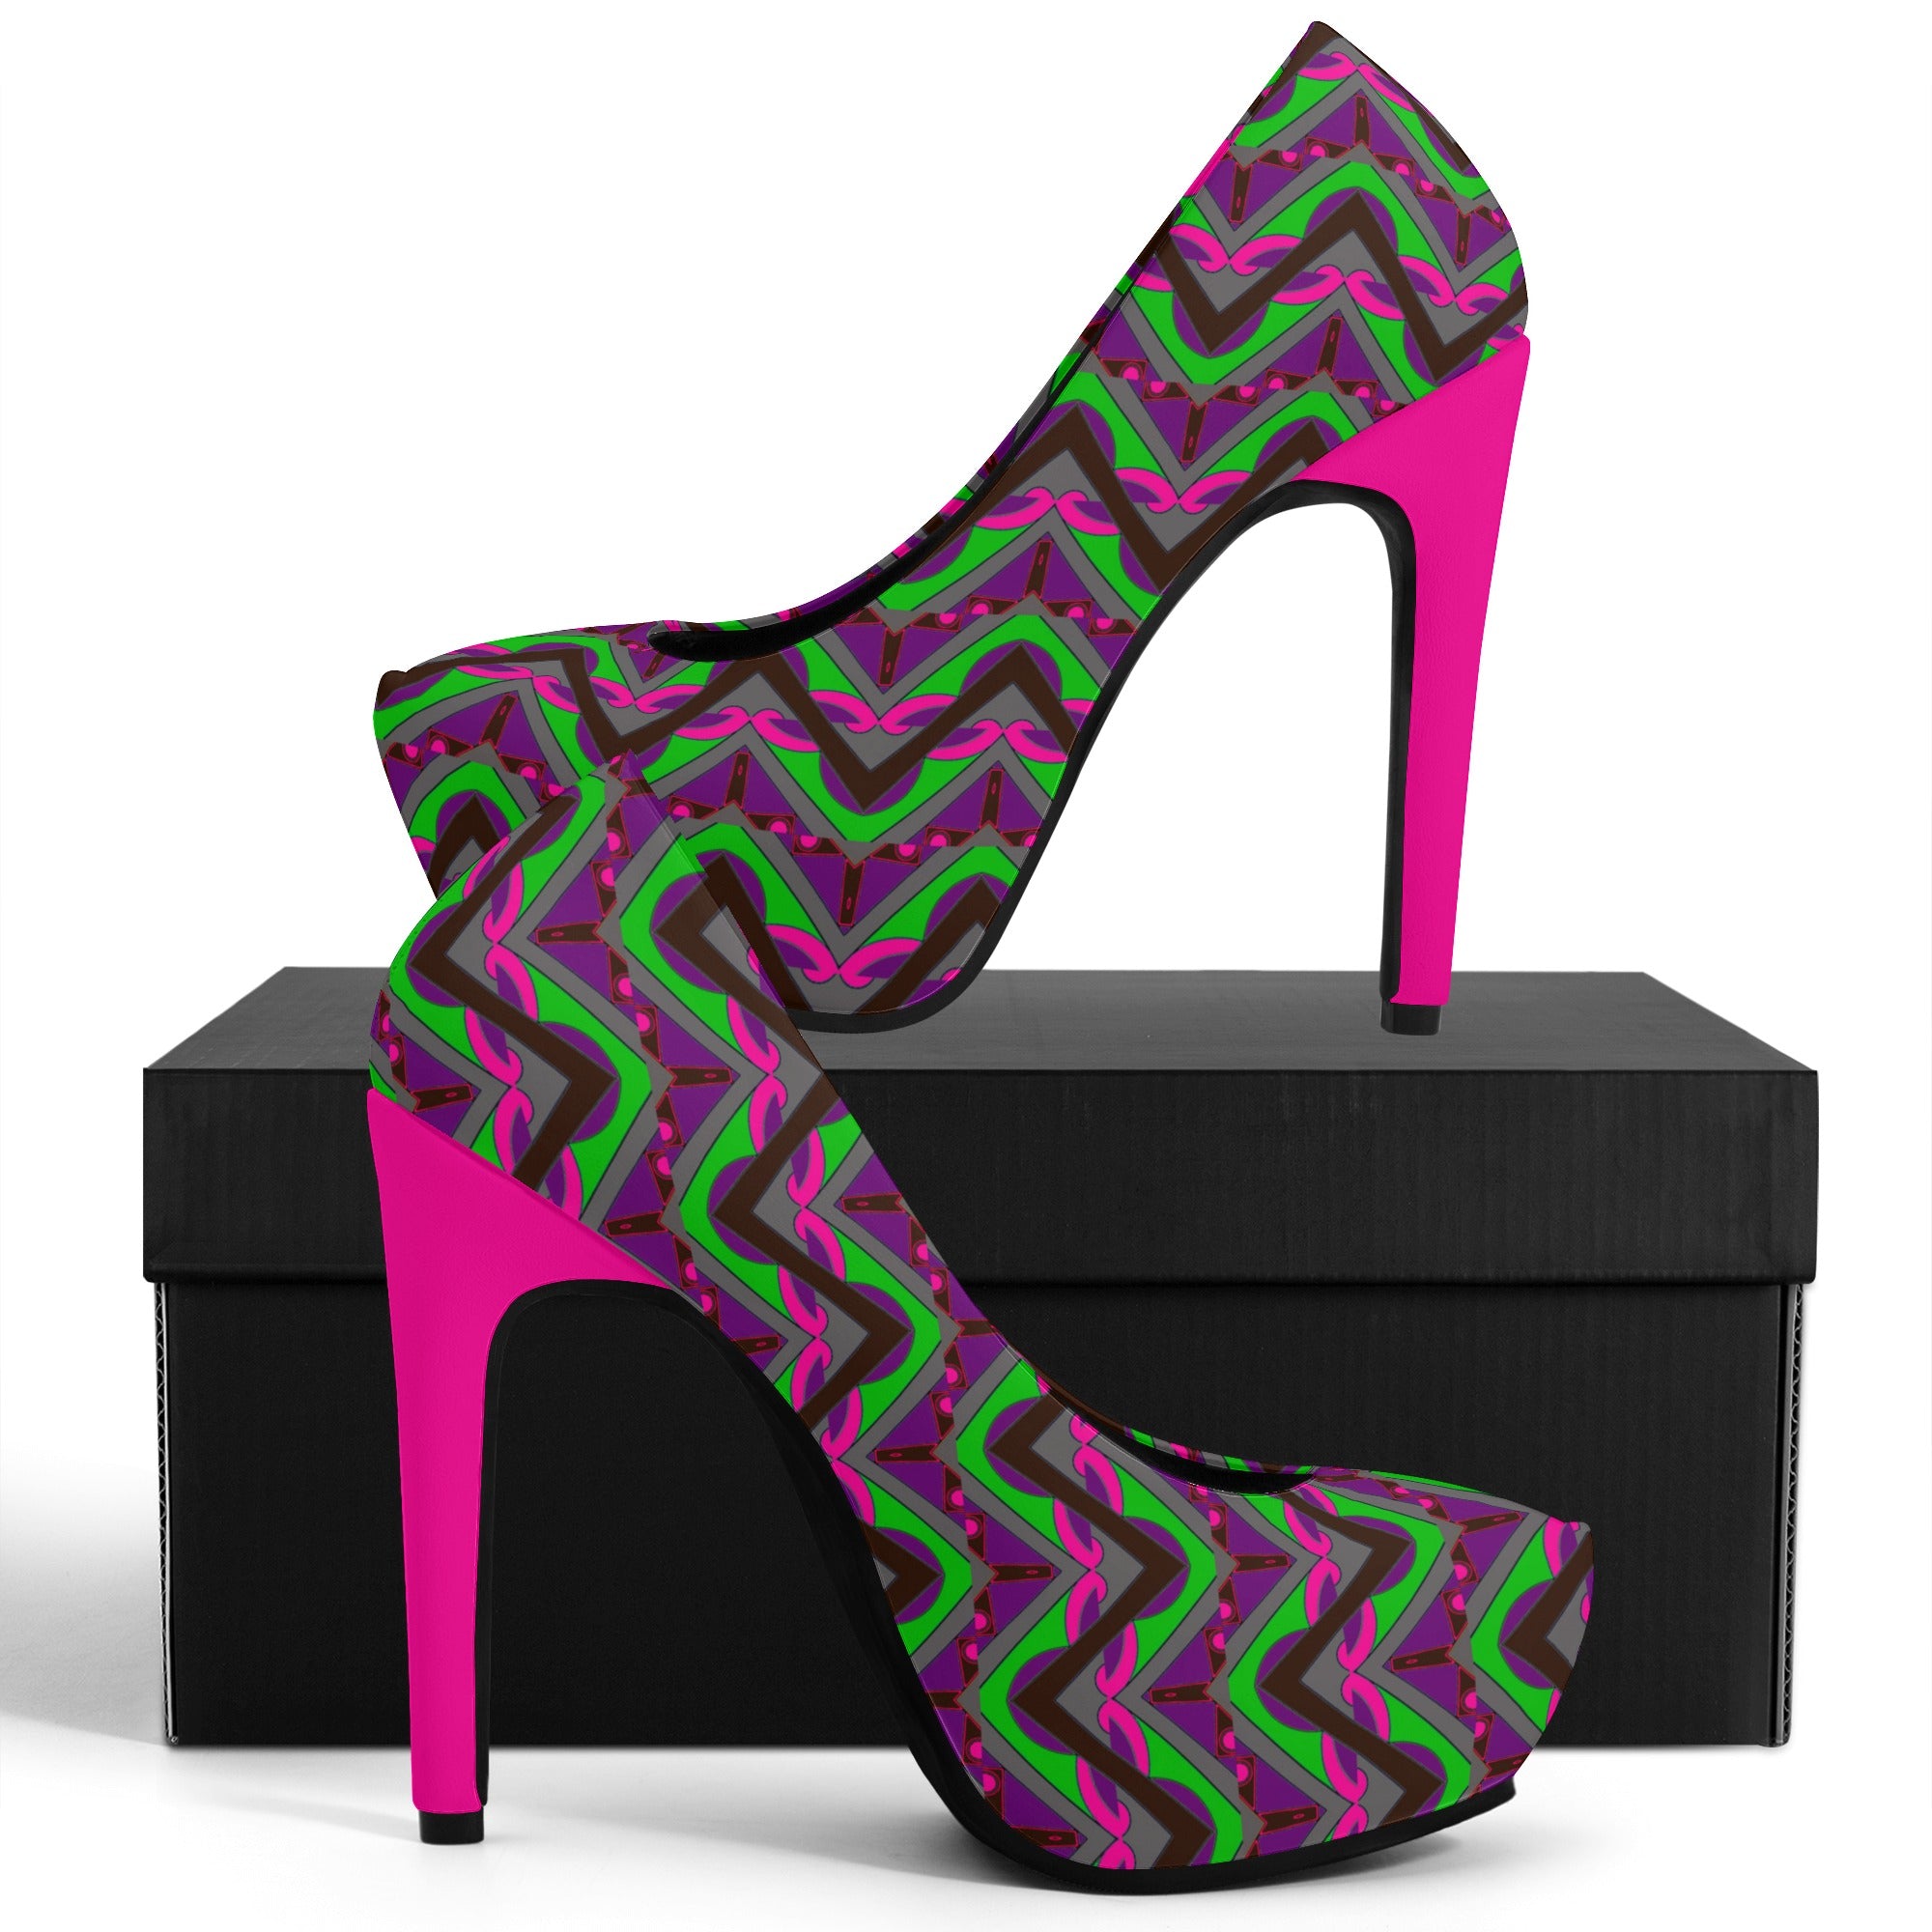 US5.5 (EU36) Maze Women Platform Pumps 5 Inch High Heels - women's shoes at TFC&H Co.